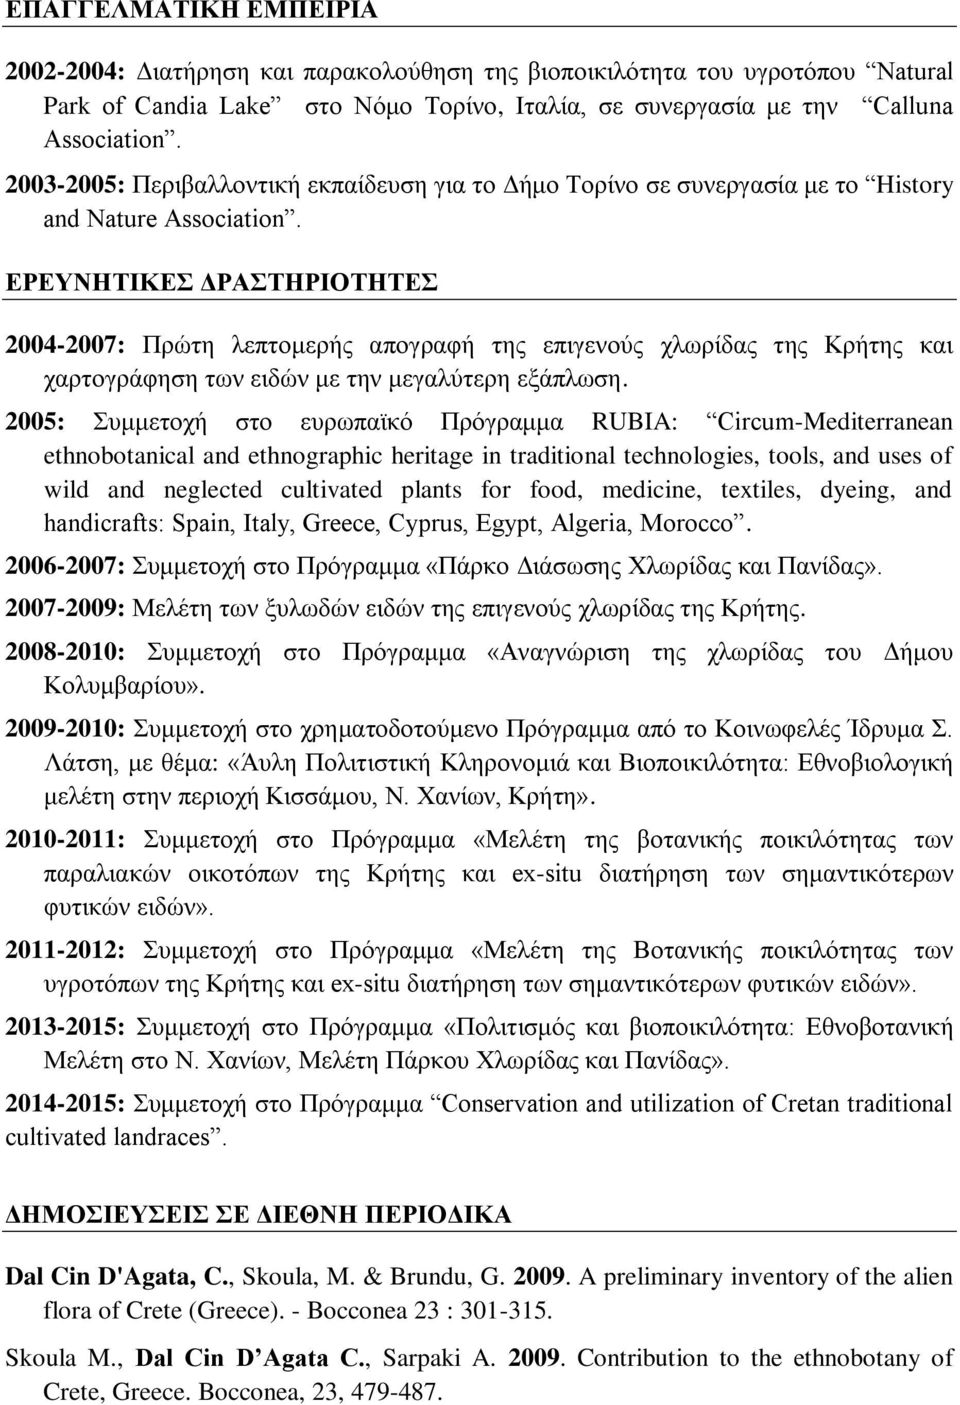 ΕΡΕΥΝΗΤΙΚΕΣ ΔΡΑΣΤΗΡΙΟΤΗΤΕΣ 2004-2007: Πρώτη λεπτομερής απογραφή της επιγενούς χλωρίδας της Κρήτης και χαρτογράφηση των ειδών με την μεγαλύτερη εξάπλωση.